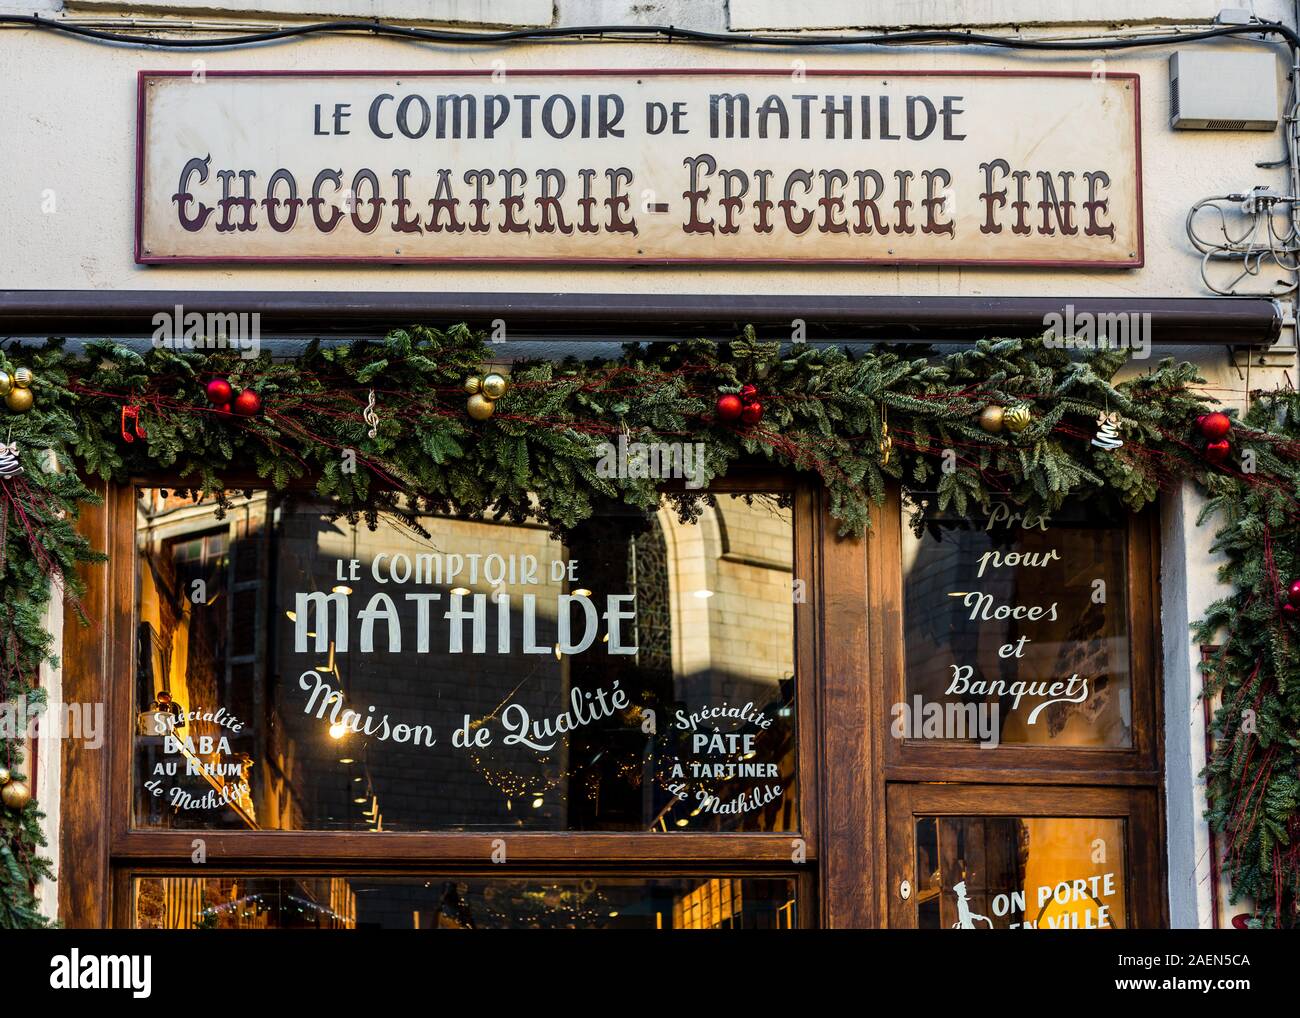 Le Comptoire de Mathilde shop, Brussels, Belgium Stock Photo